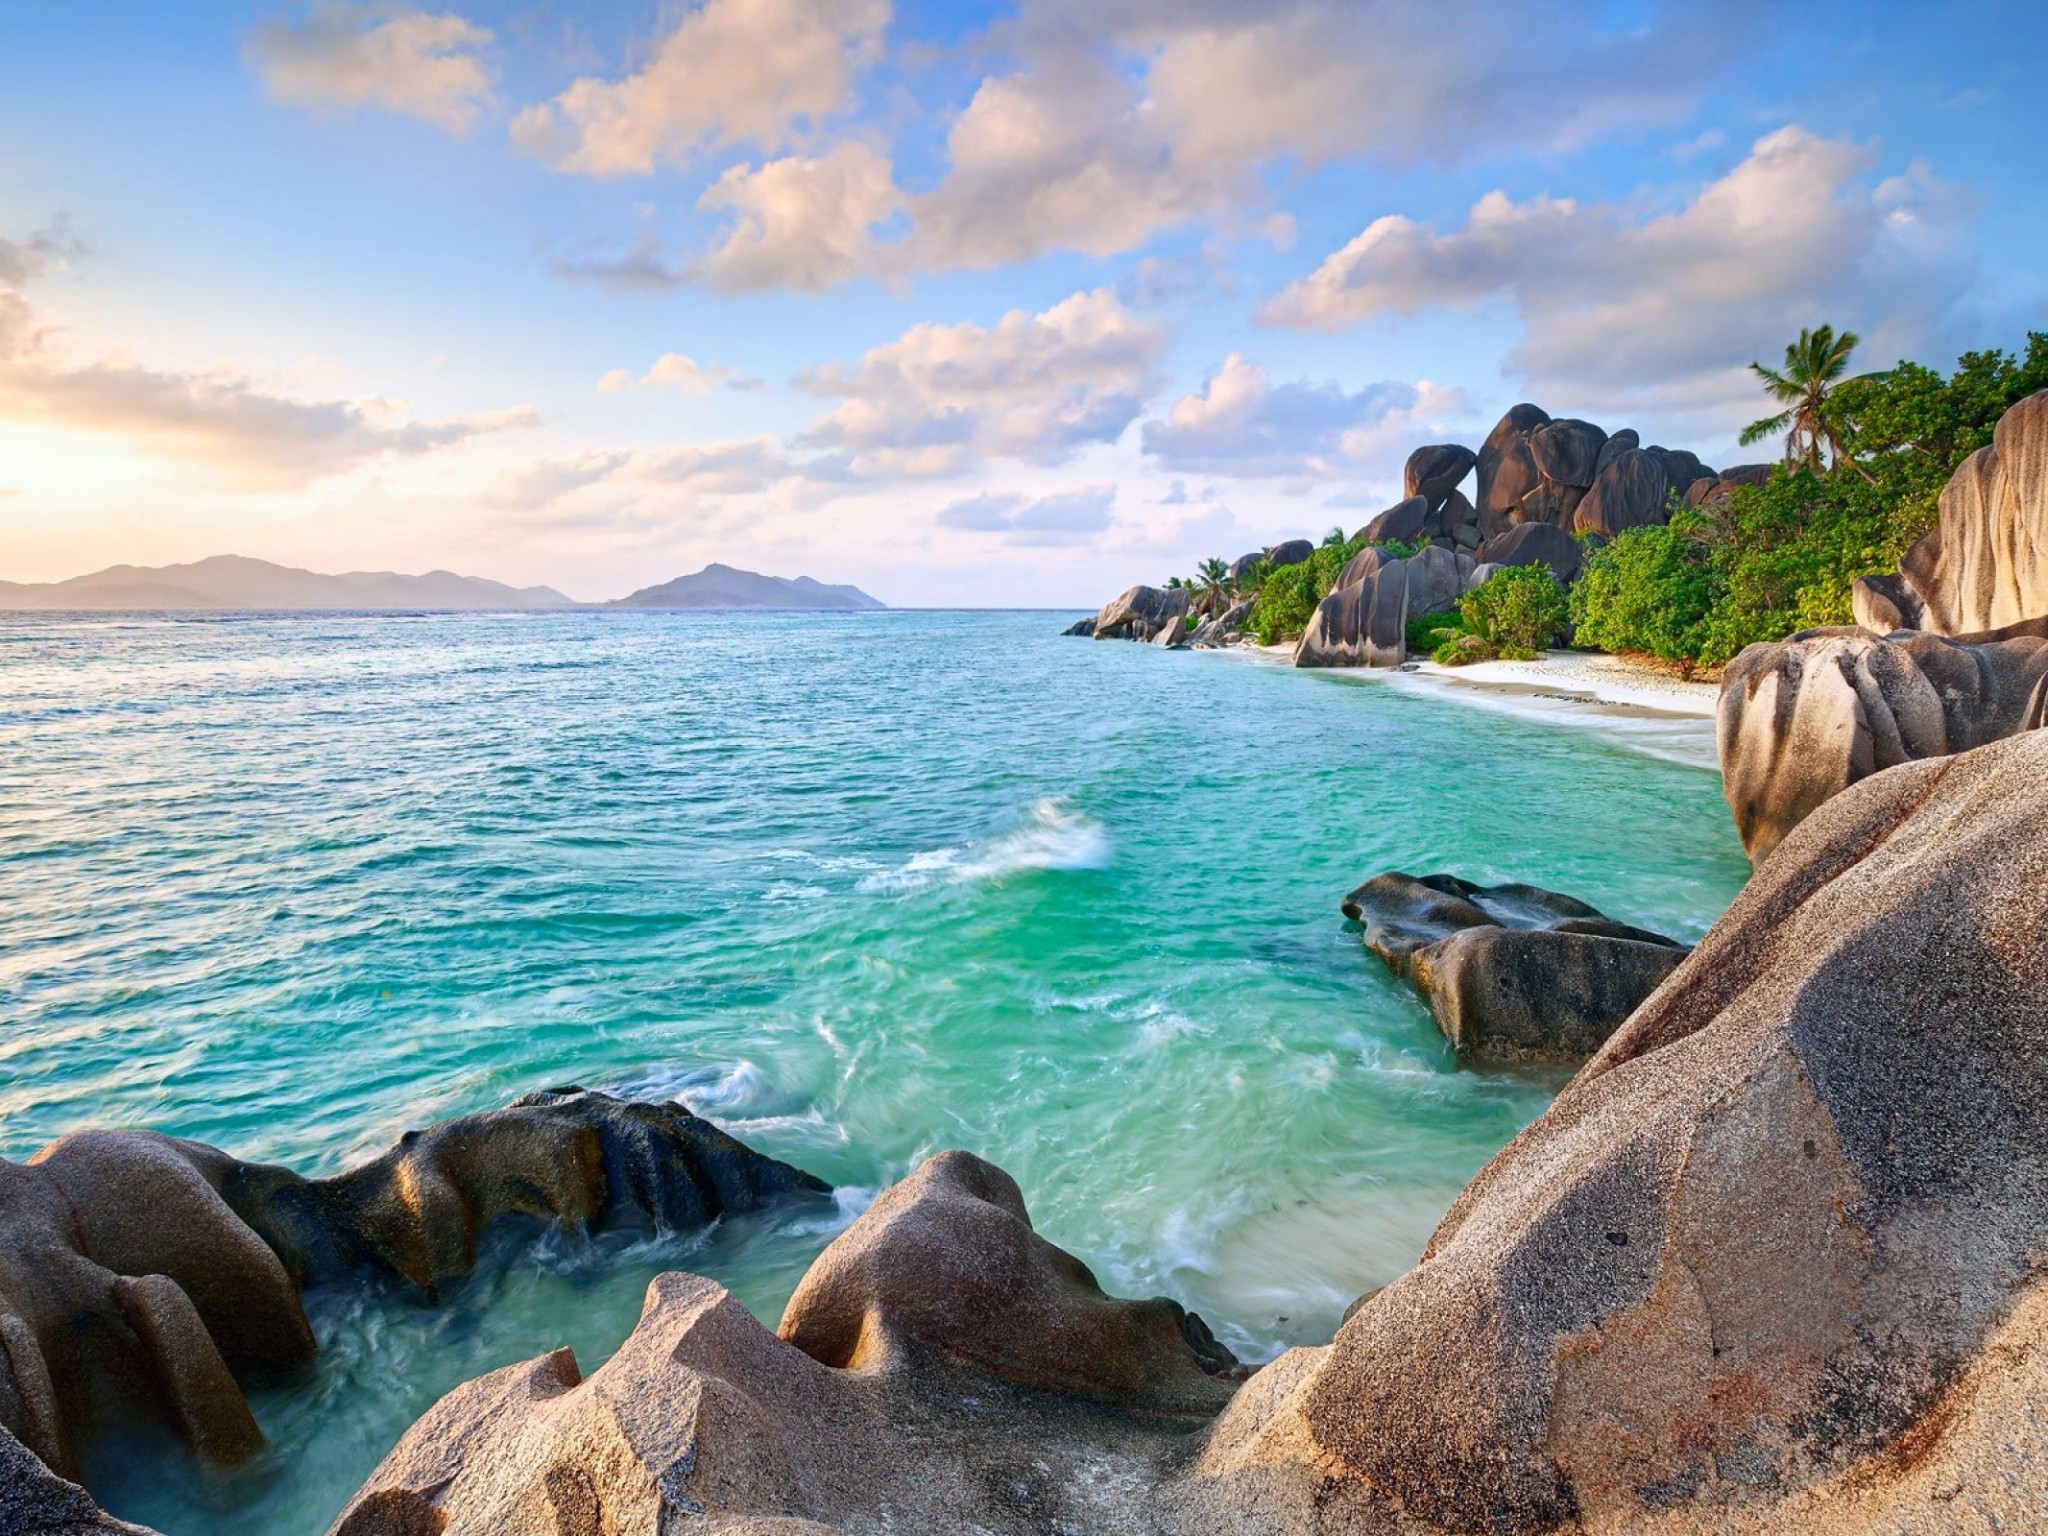 La Digue Seychelles , HD Wallpaper & Backgrounds